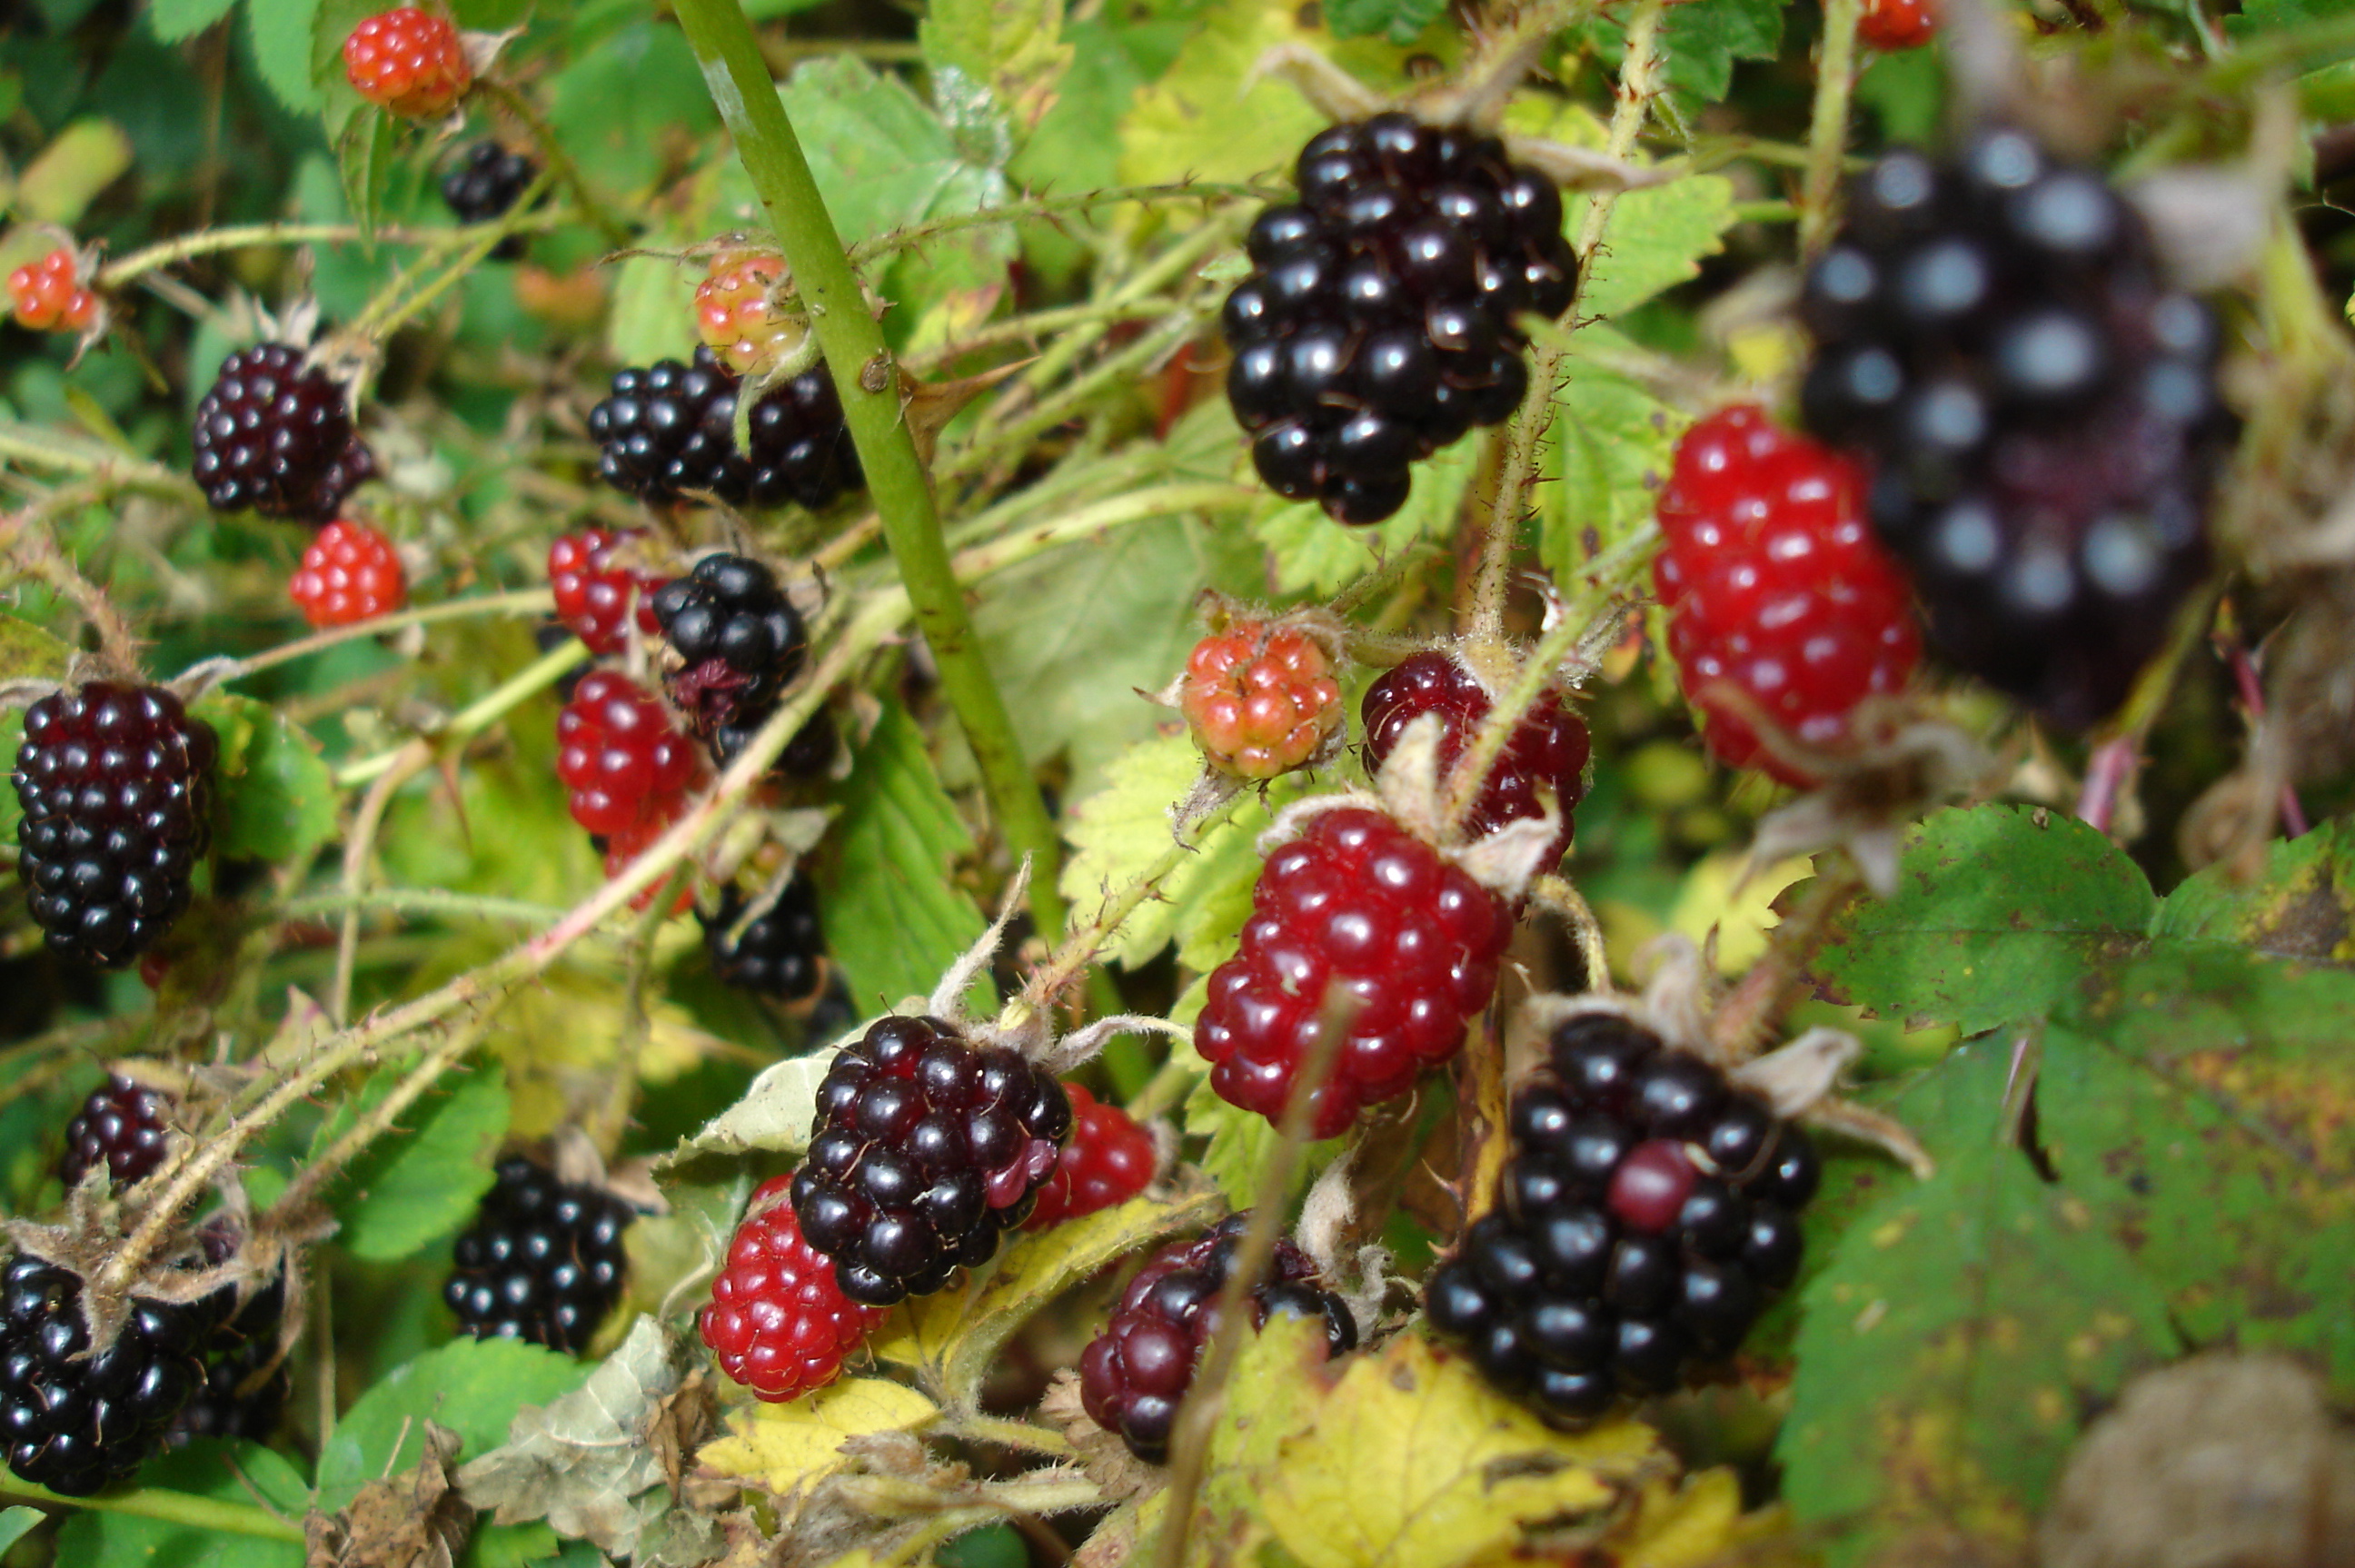 russian wildberries france germany spain